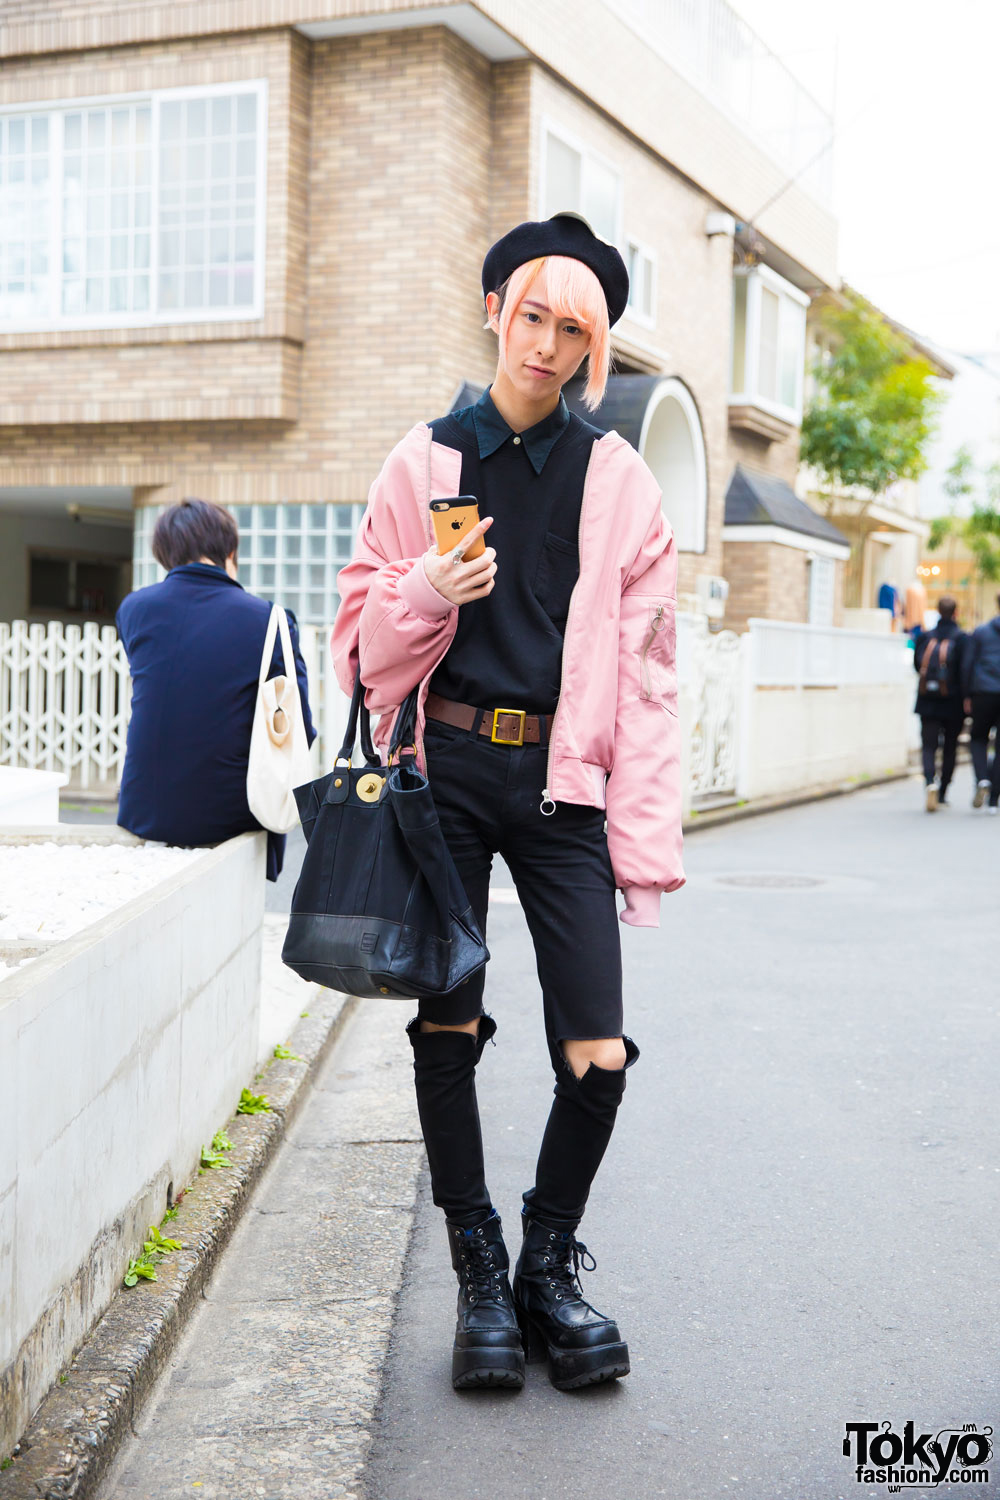 Tokyo Fashion on X: 20-year-old Fumiya on the street in Harajuku